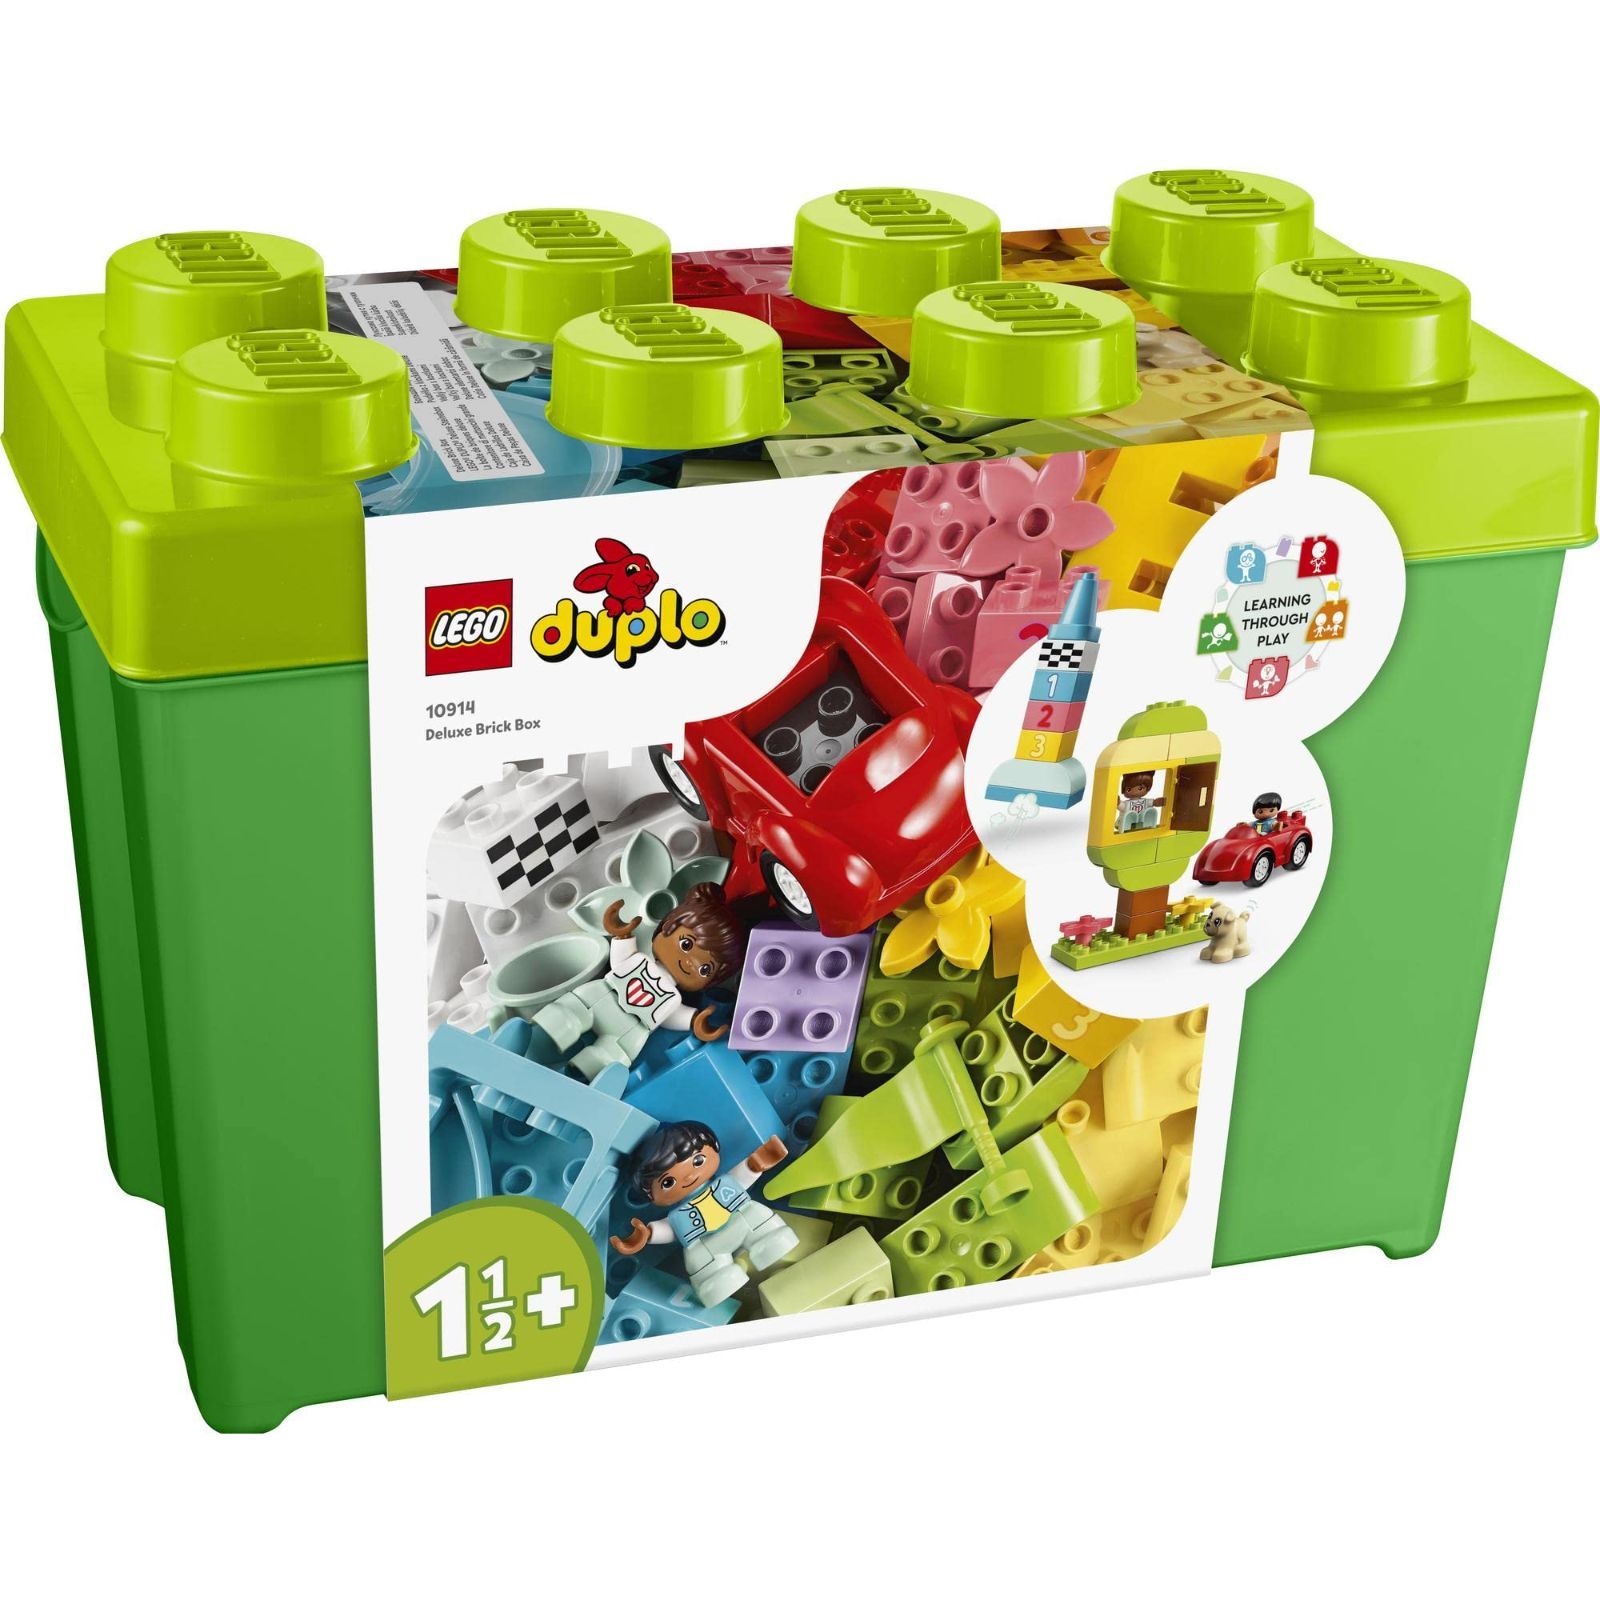 【人気商品】1歳半 レゴブロック ギフト プレゼント 誕生日 玩具 知育 幼児 赤ちゃん 子供 3歳 ~ 2歳 女の子 男の子 10914 スーパーデラックス デュプロのコンテナ 知育玩具 おもちゃ デュプロ (LEGO) レゴ